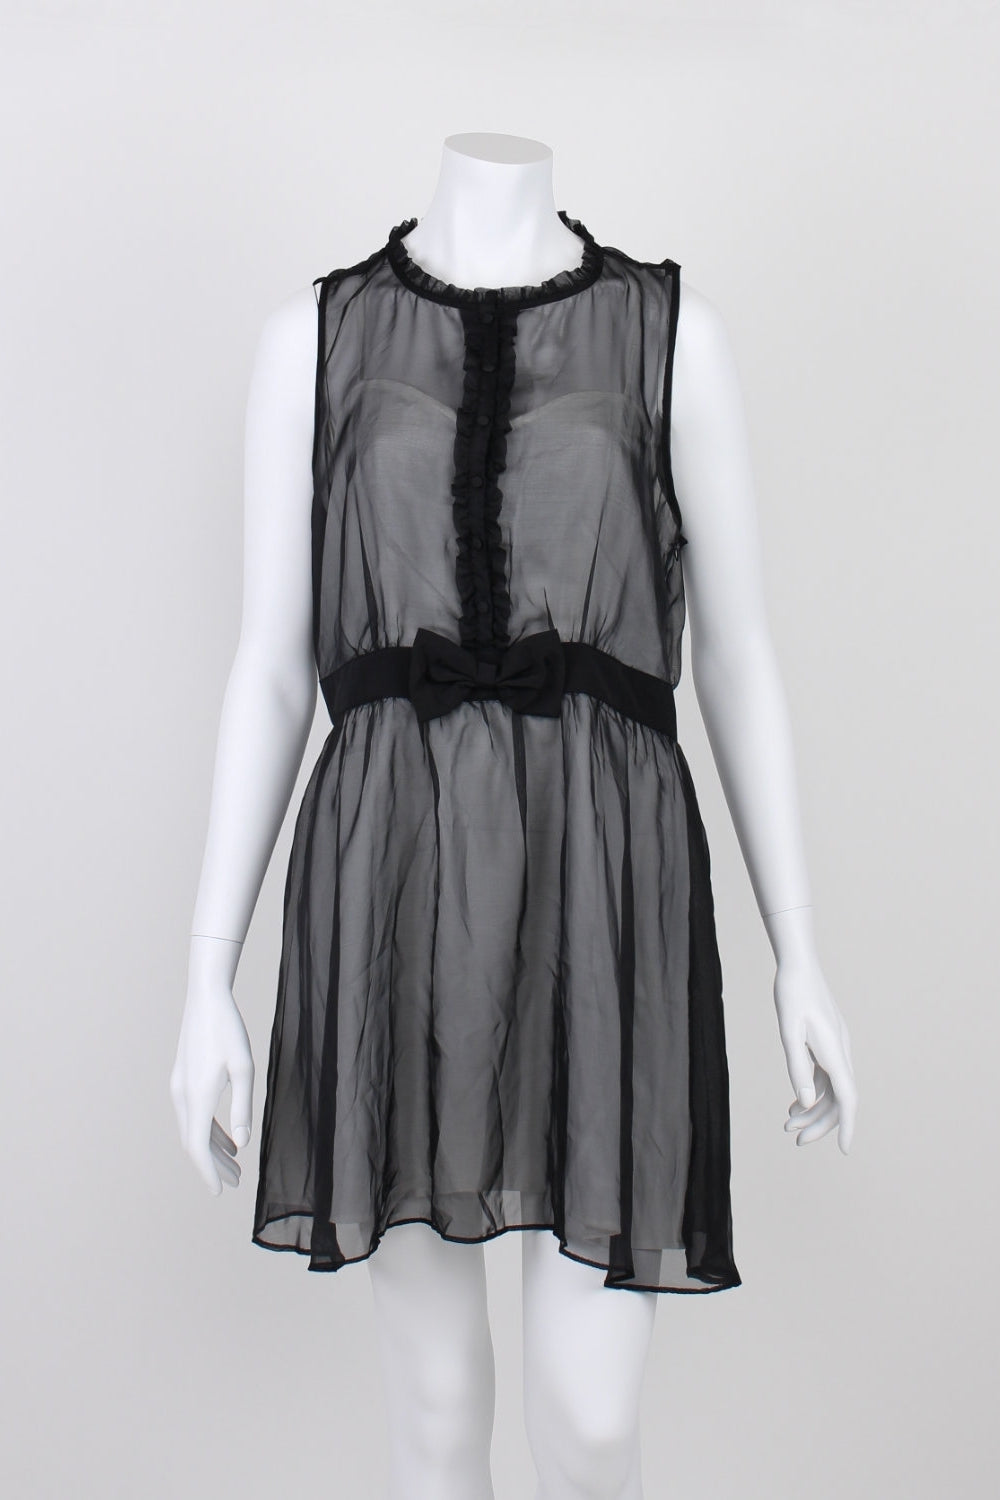 Miss Shop Black Sleeveless Button Front Dress 14